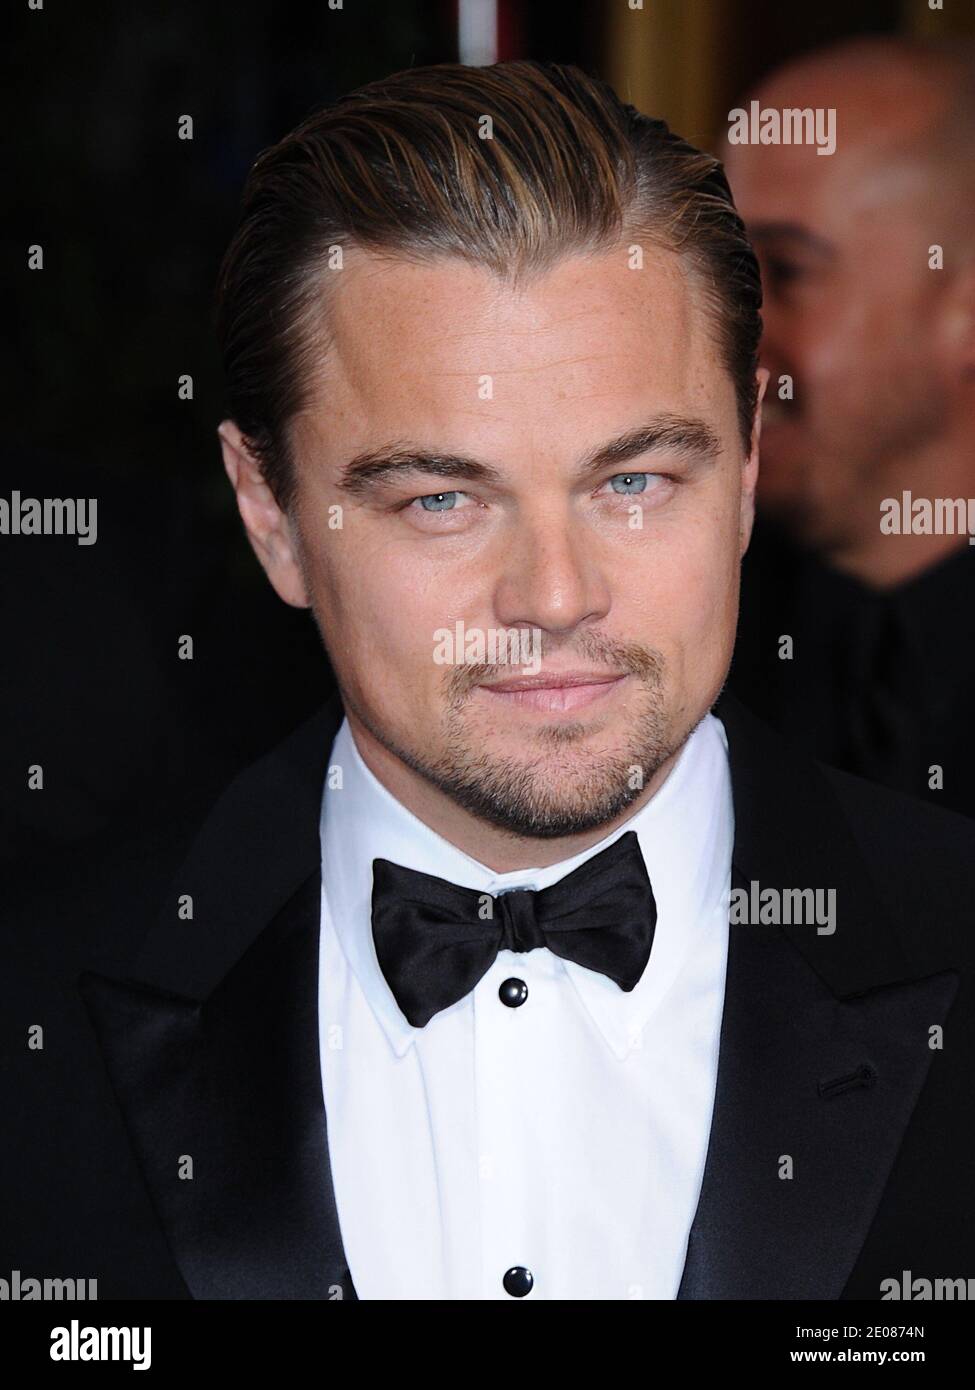 Leonardo di Caprio arriva alla 69° cerimonia annuale dei Golden Globe Awards, che si è svolta il 15 gennaio 2012 presso il Beverly Hilton Hotel di Los Angeles, California, USA. Foto di Lionel Hahn/ABACAPRESS.COM Foto Stock